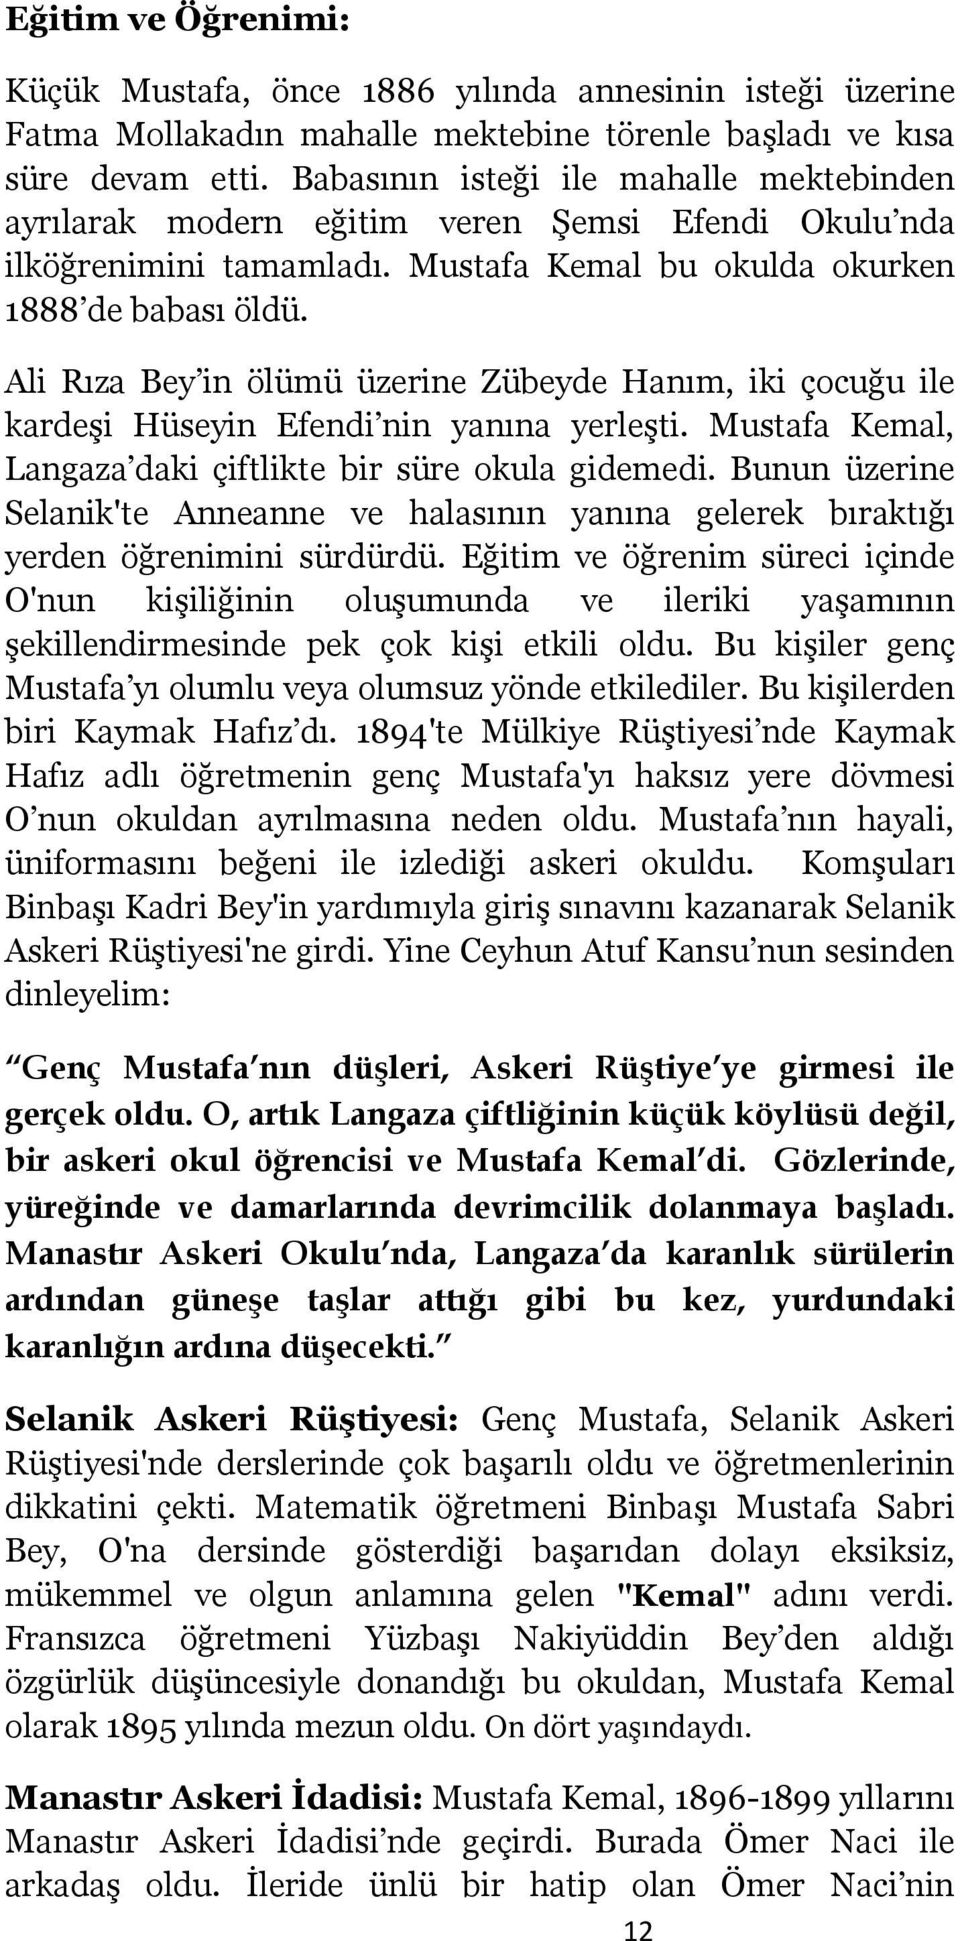 Ali Rıza Bey in ölümü üzerine Zübeyde Hanım, iki çocuğu ile kardeşi Hüseyin Efendi nin yanına yerleşti. Mustafa Kemal, Langaza daki çiftlikte bir süre okula gidemedi.